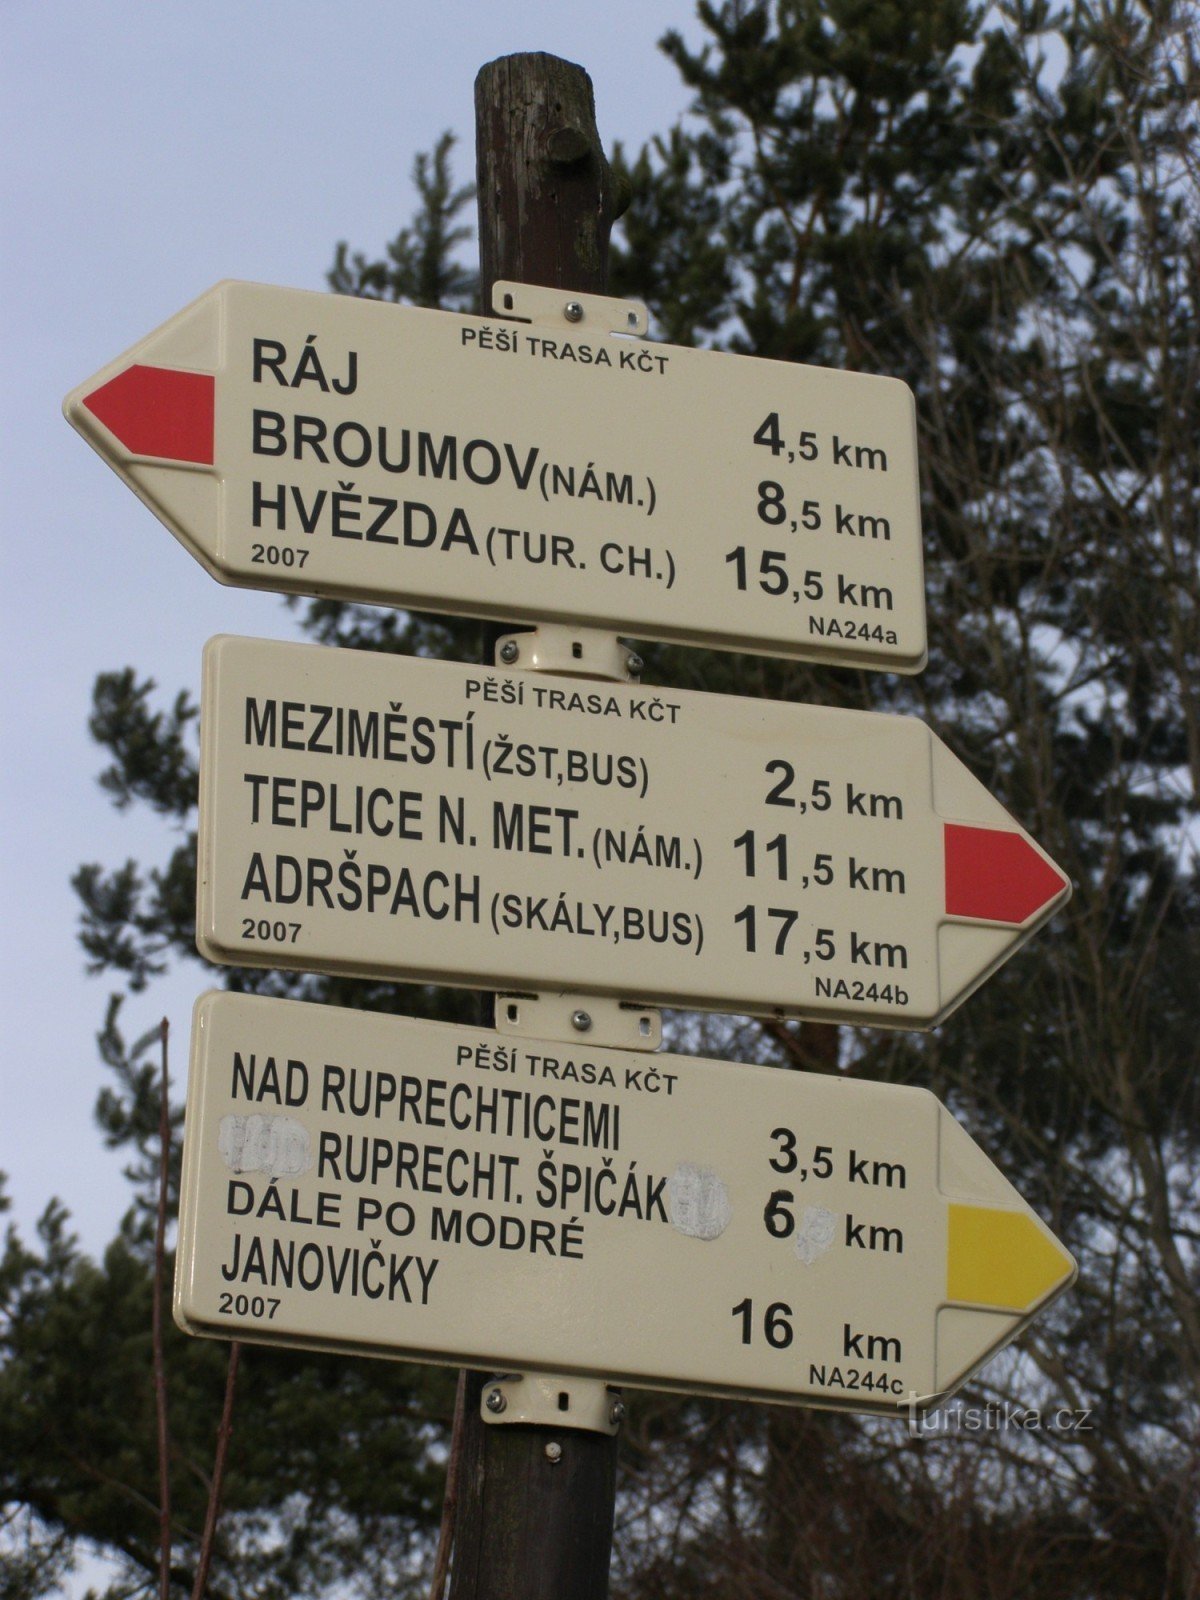 encrucijada turística - Ruprechtice, ferrocarril